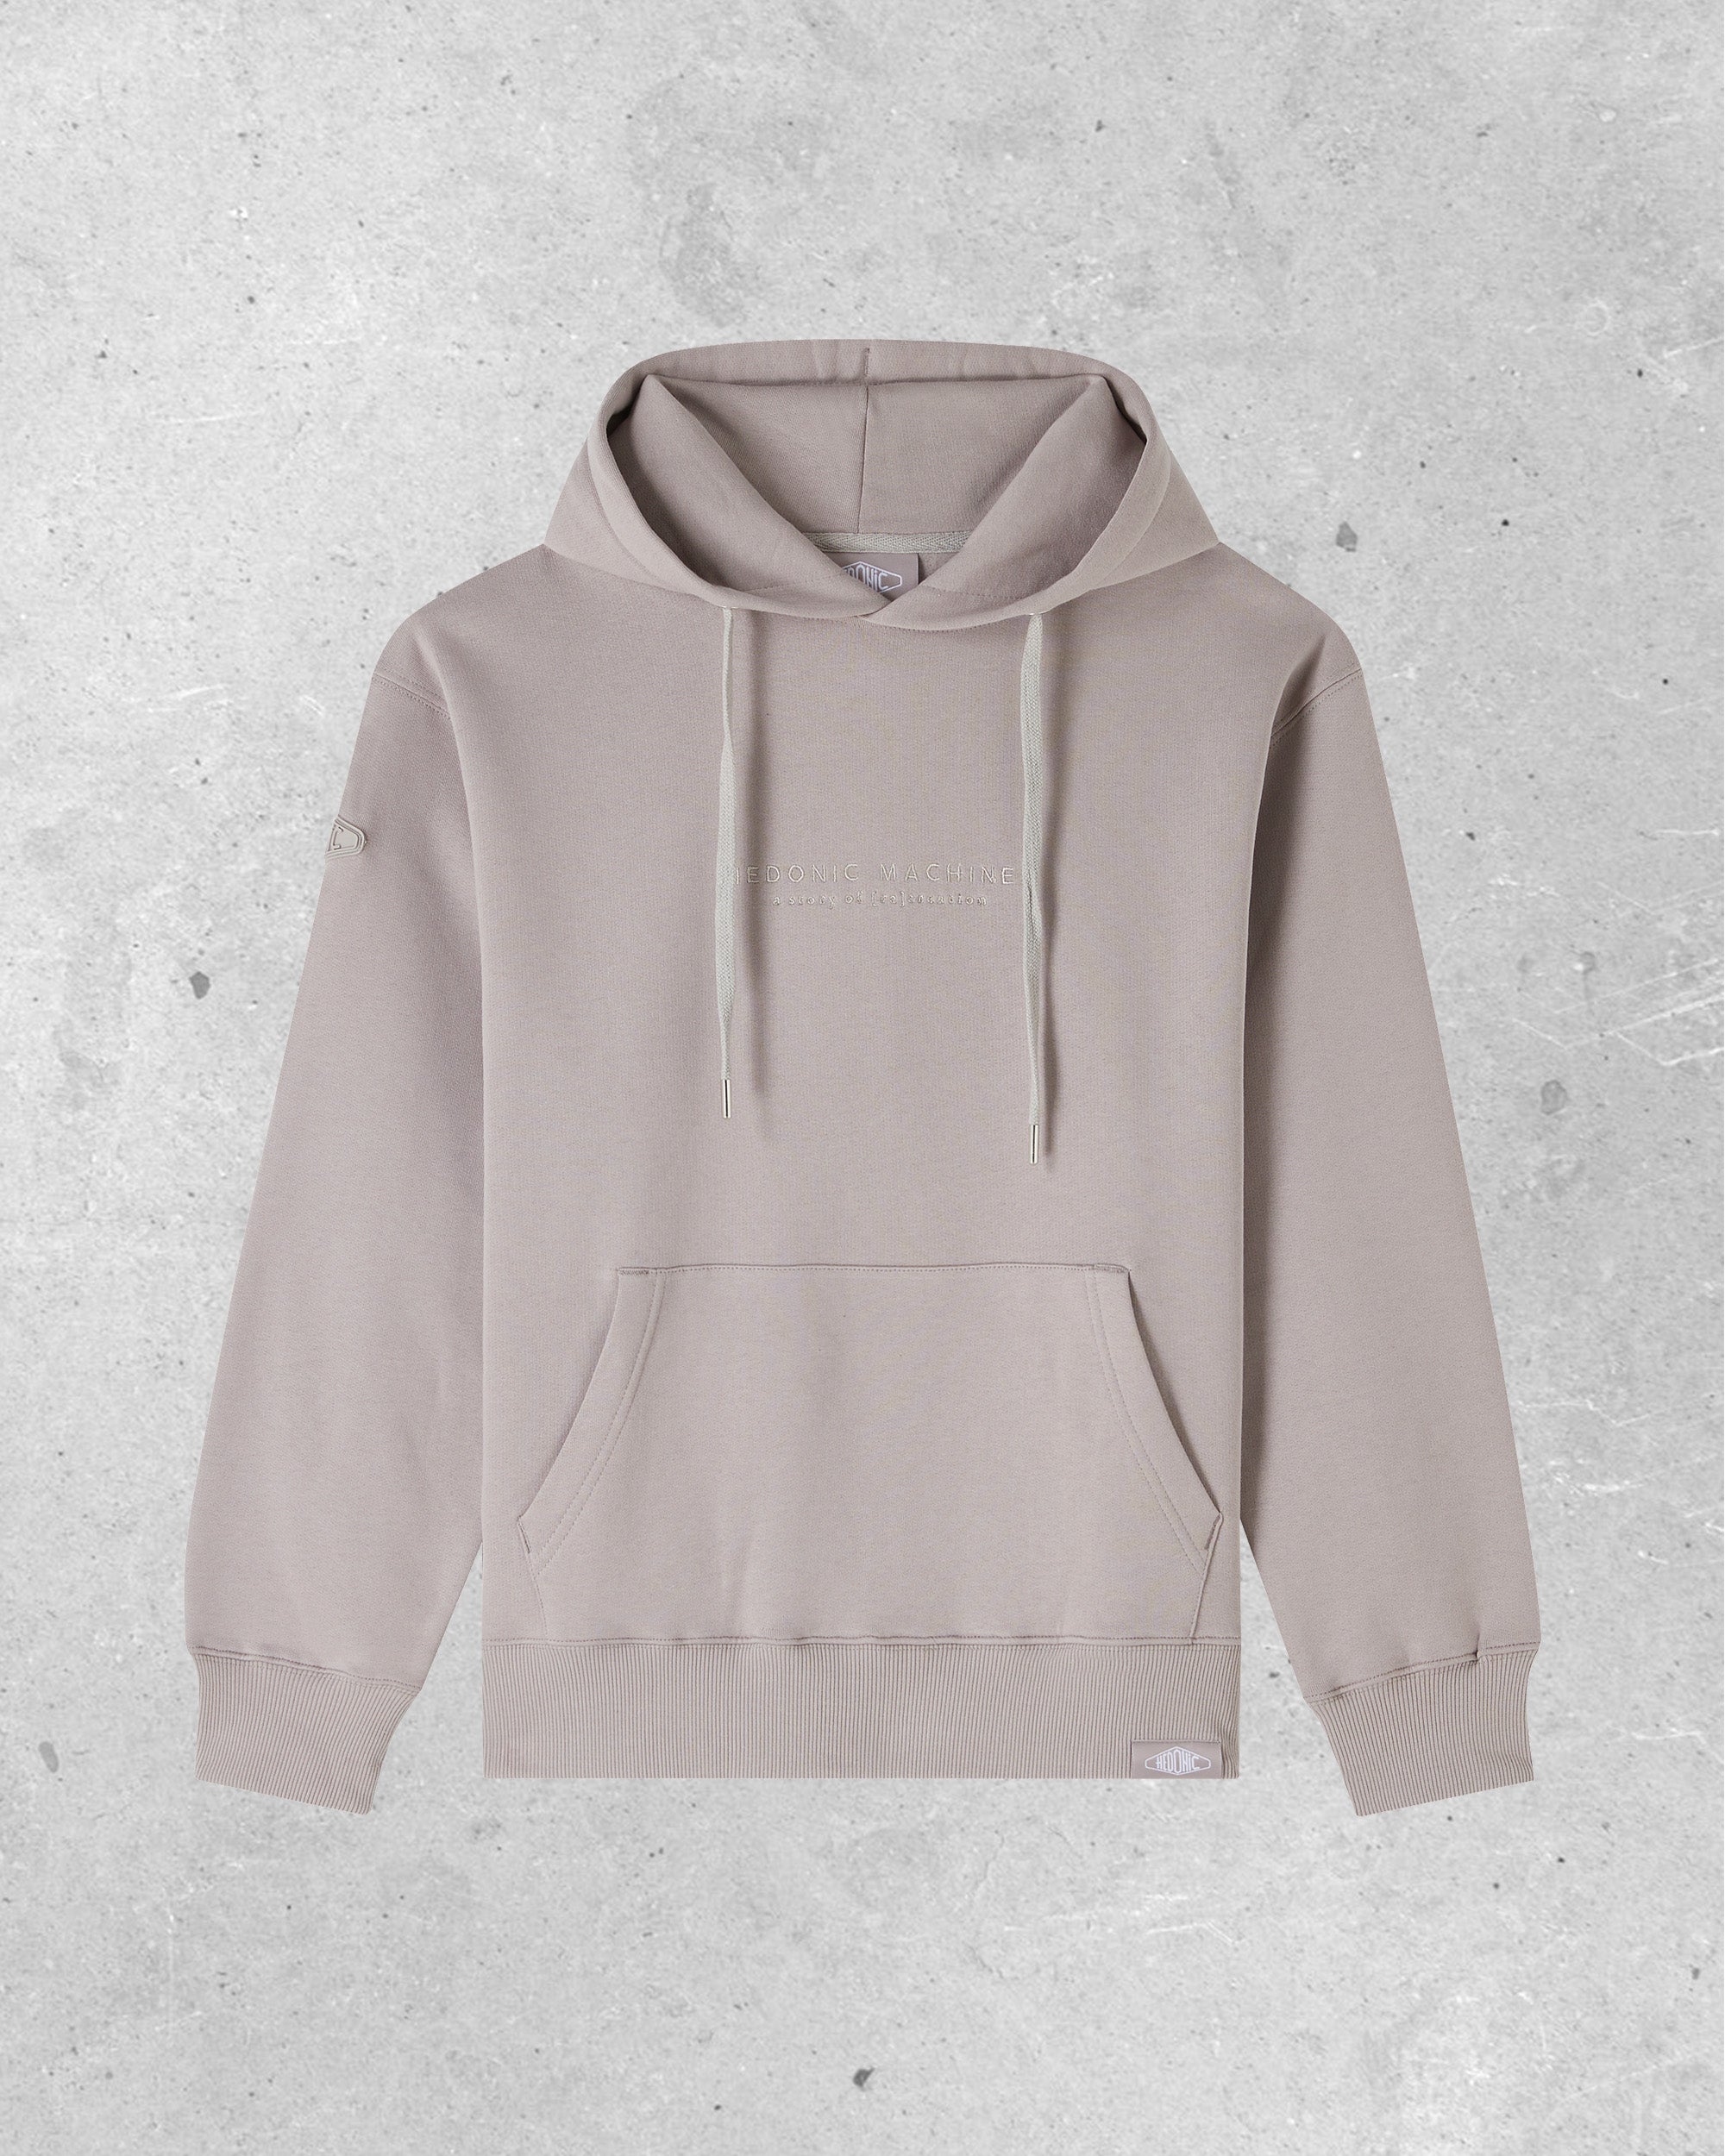 Gray hooded sweatshirt - Basics - Greige embroidery